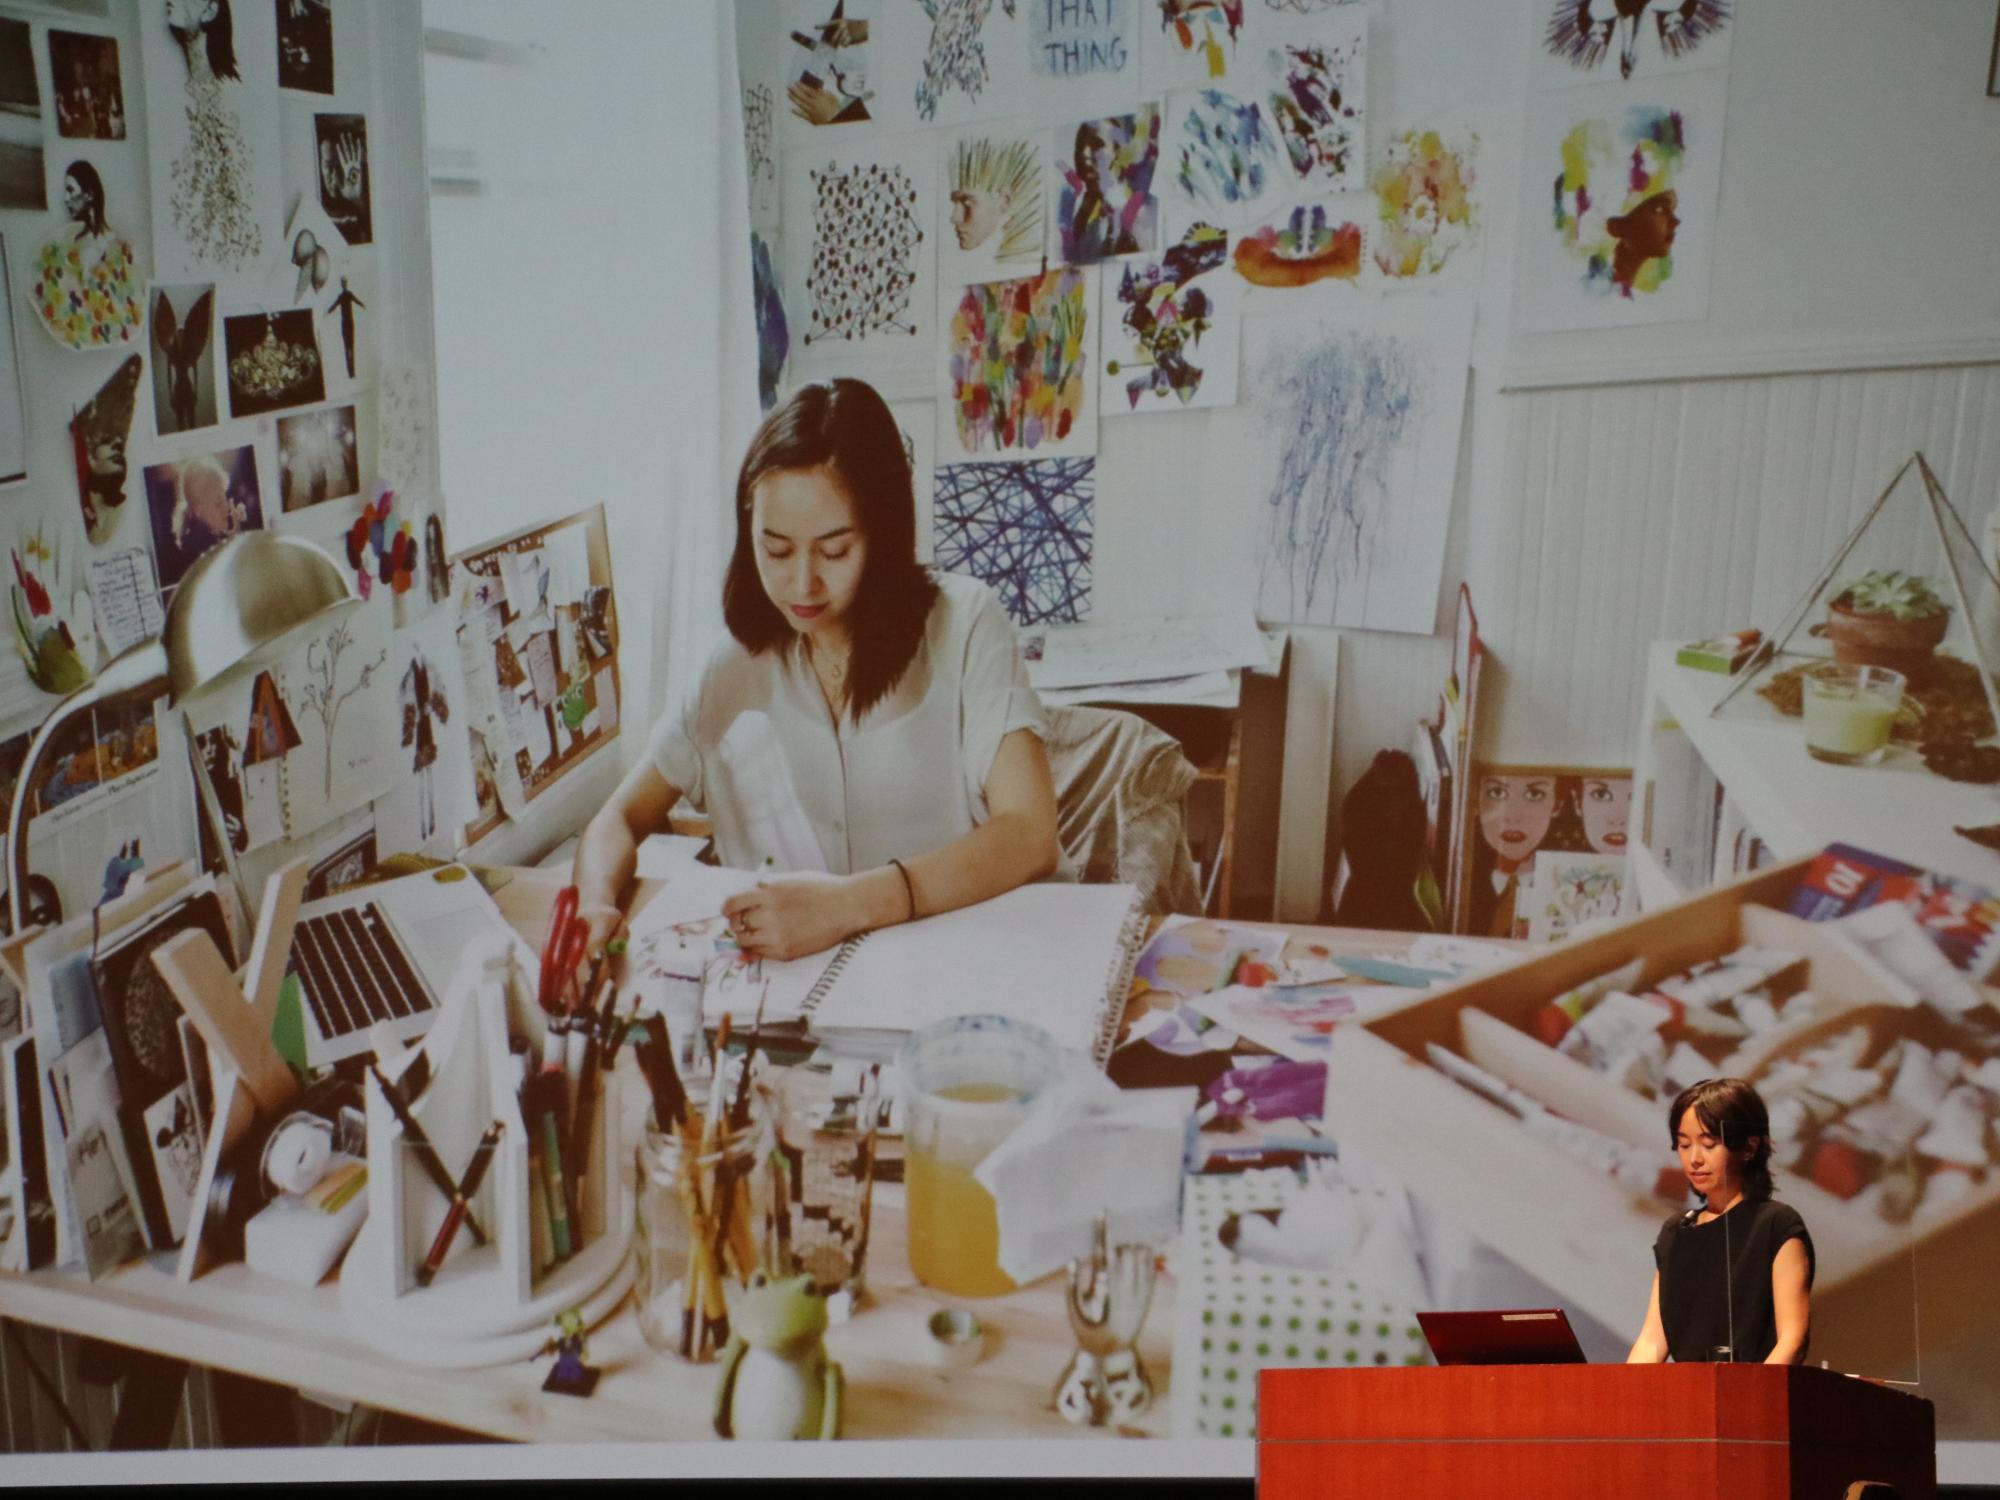 壁にデザインがたくさん貼られていて、机でデザインを考えている女性の写真をスライドに写して、女性が説明している